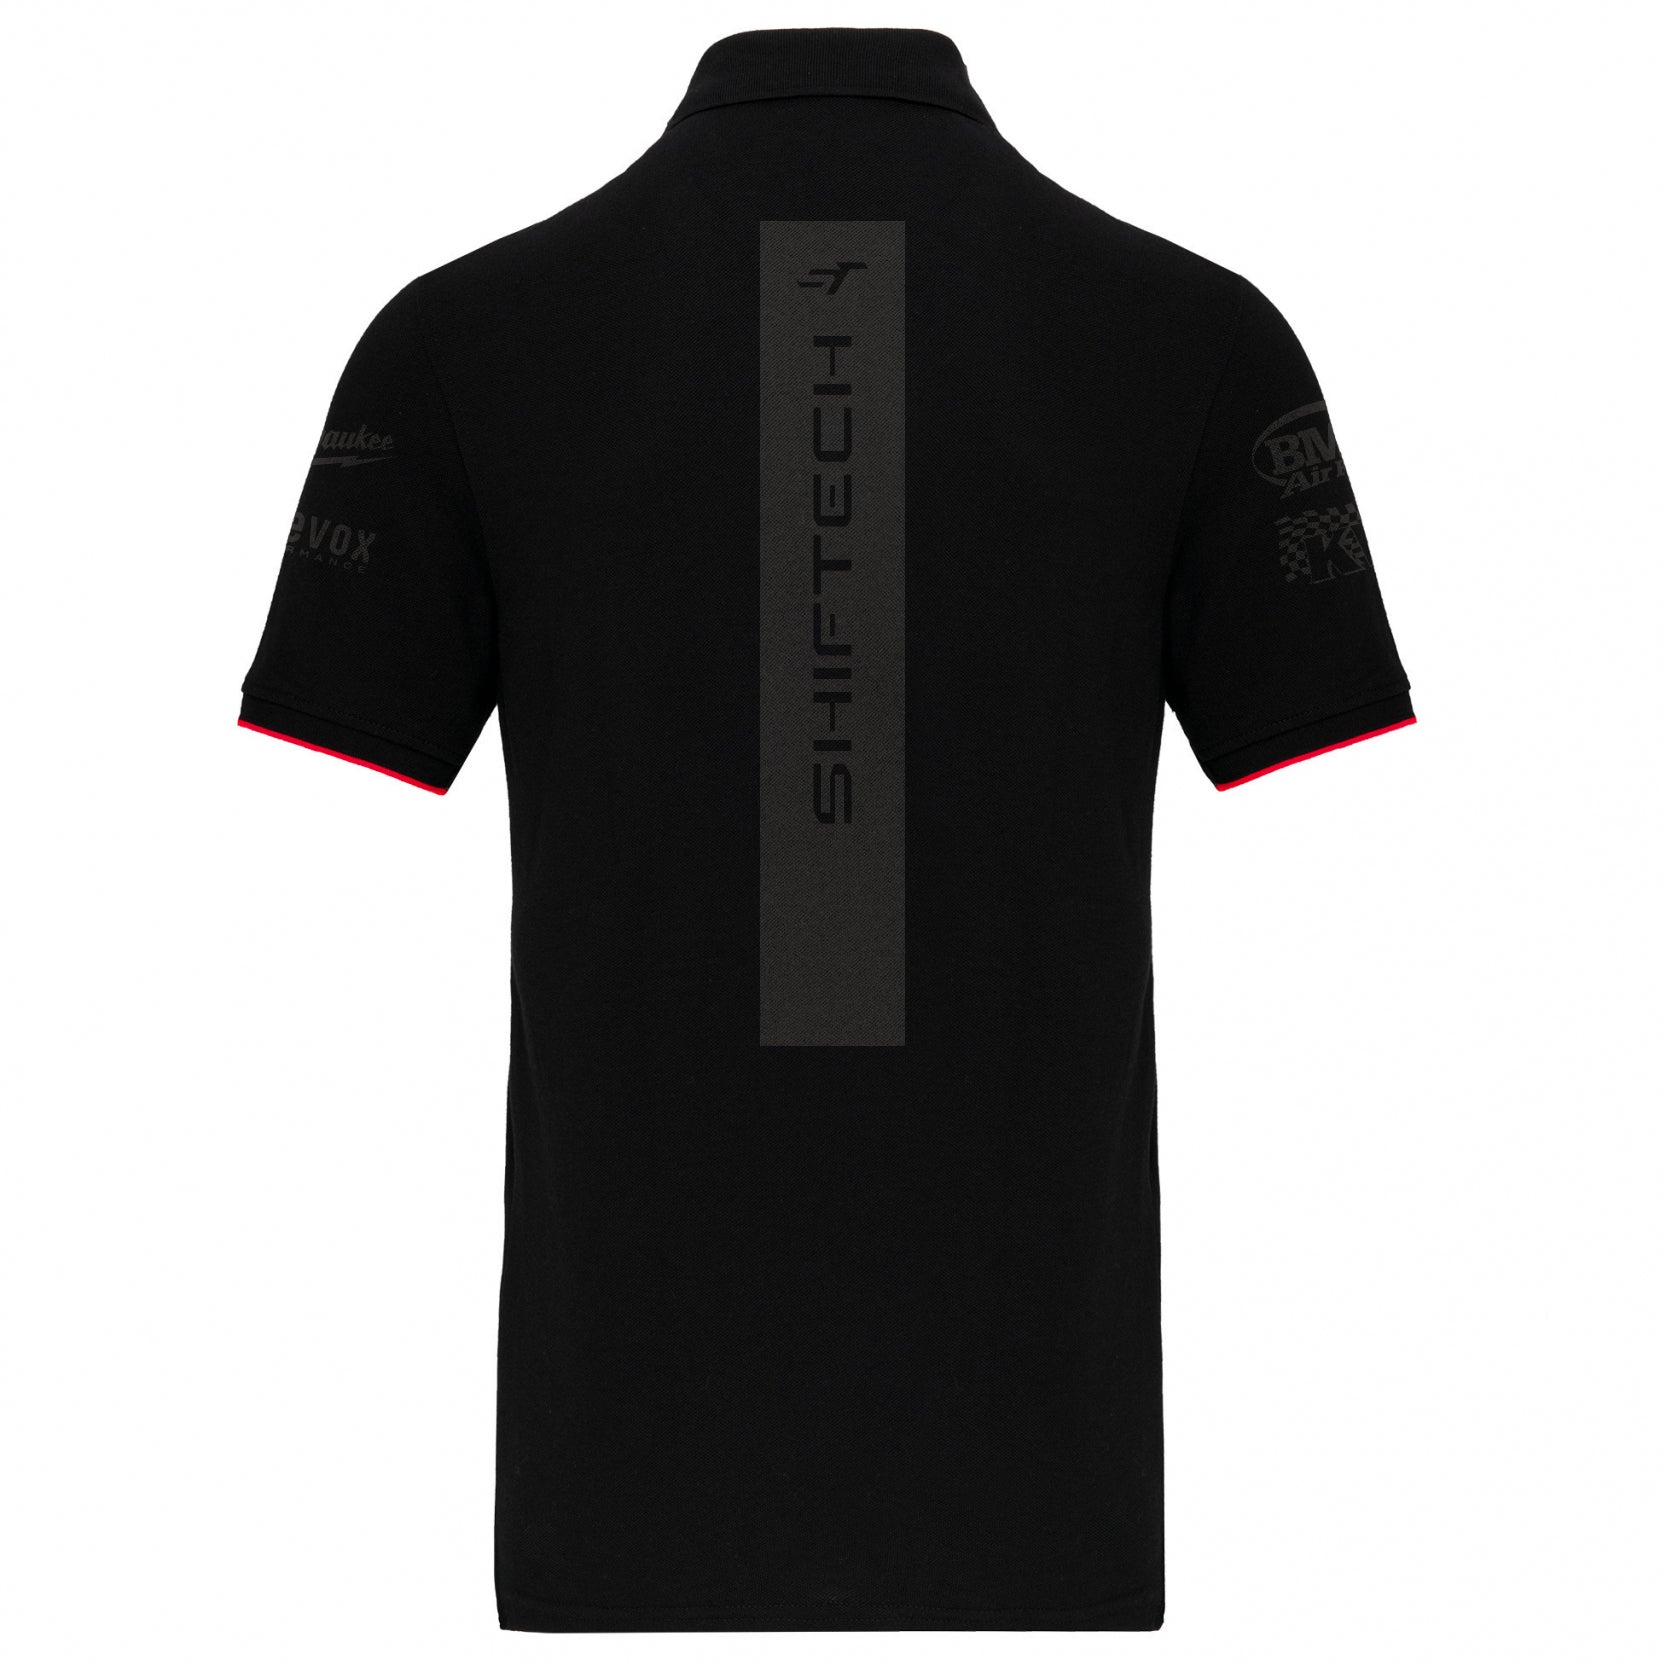 Polo noir manches courtes détails rouge logo Shiftech imprimé noir - Homme